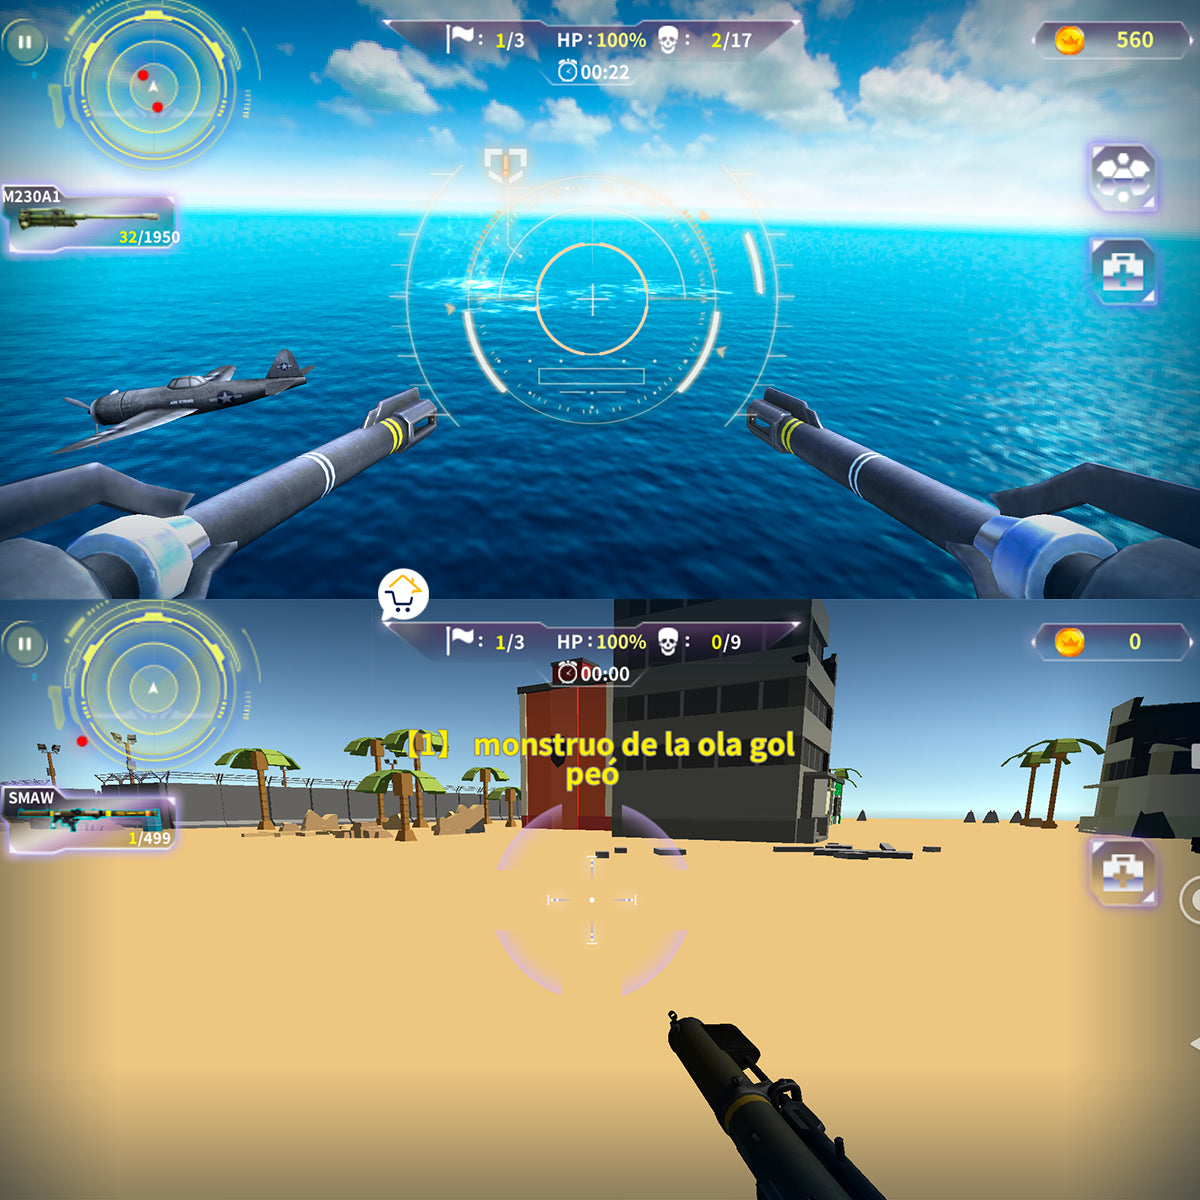 Pistola Virtual Ar Realidad Aumentada Celular Juegos N900i